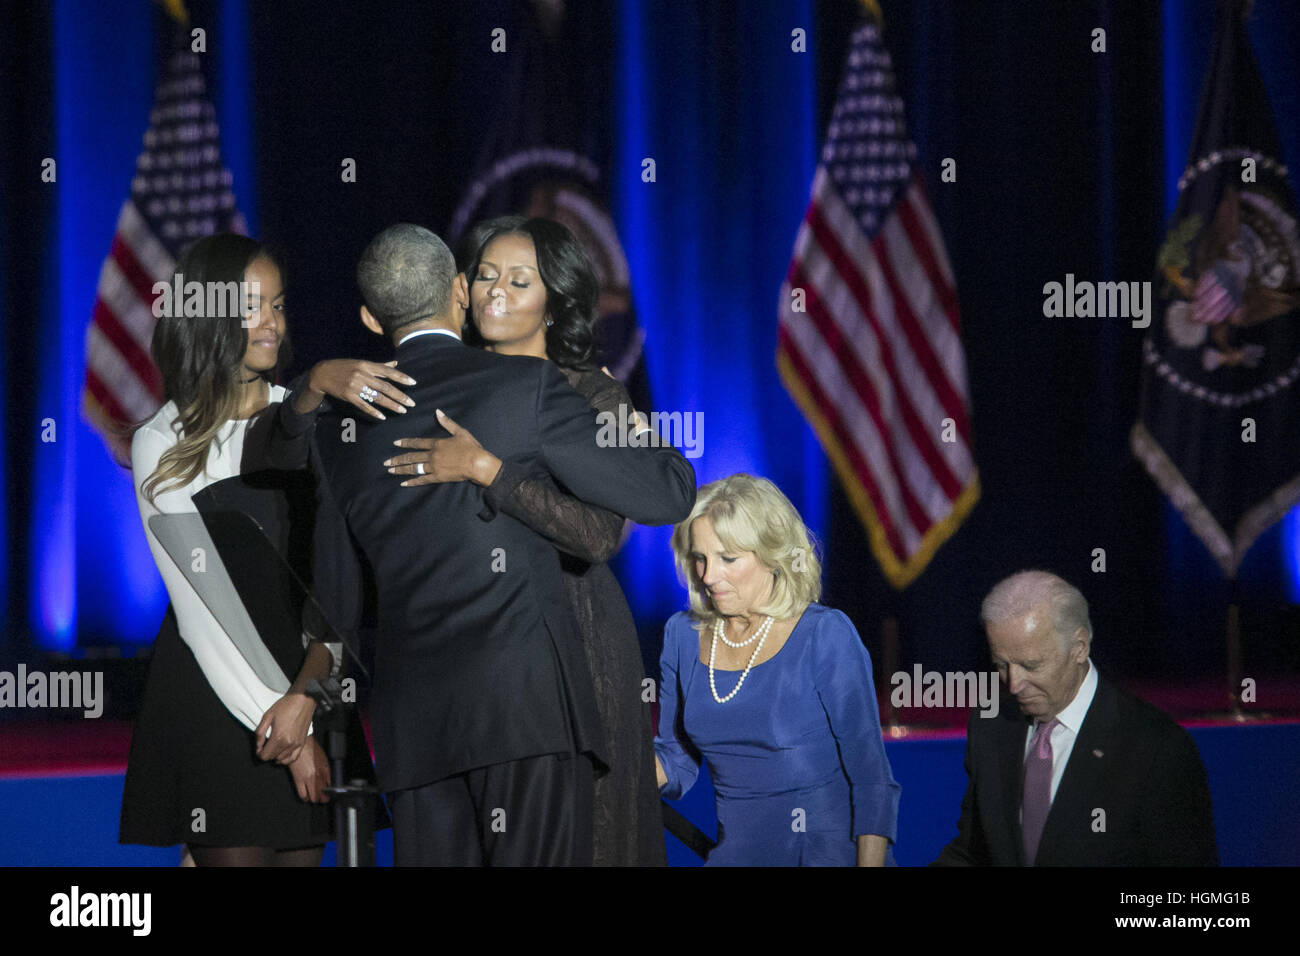 Chicago, Illinois, Estados Unidos. 10 Enero, 2017. El presidente Obama abrazando a la Primera Dama, Michelle Obama, al final de su discurso de despedida en Chicago, en el McCormick Place. © Rick Majewski/Zuma alambre/Alamy Live News Foto de stock